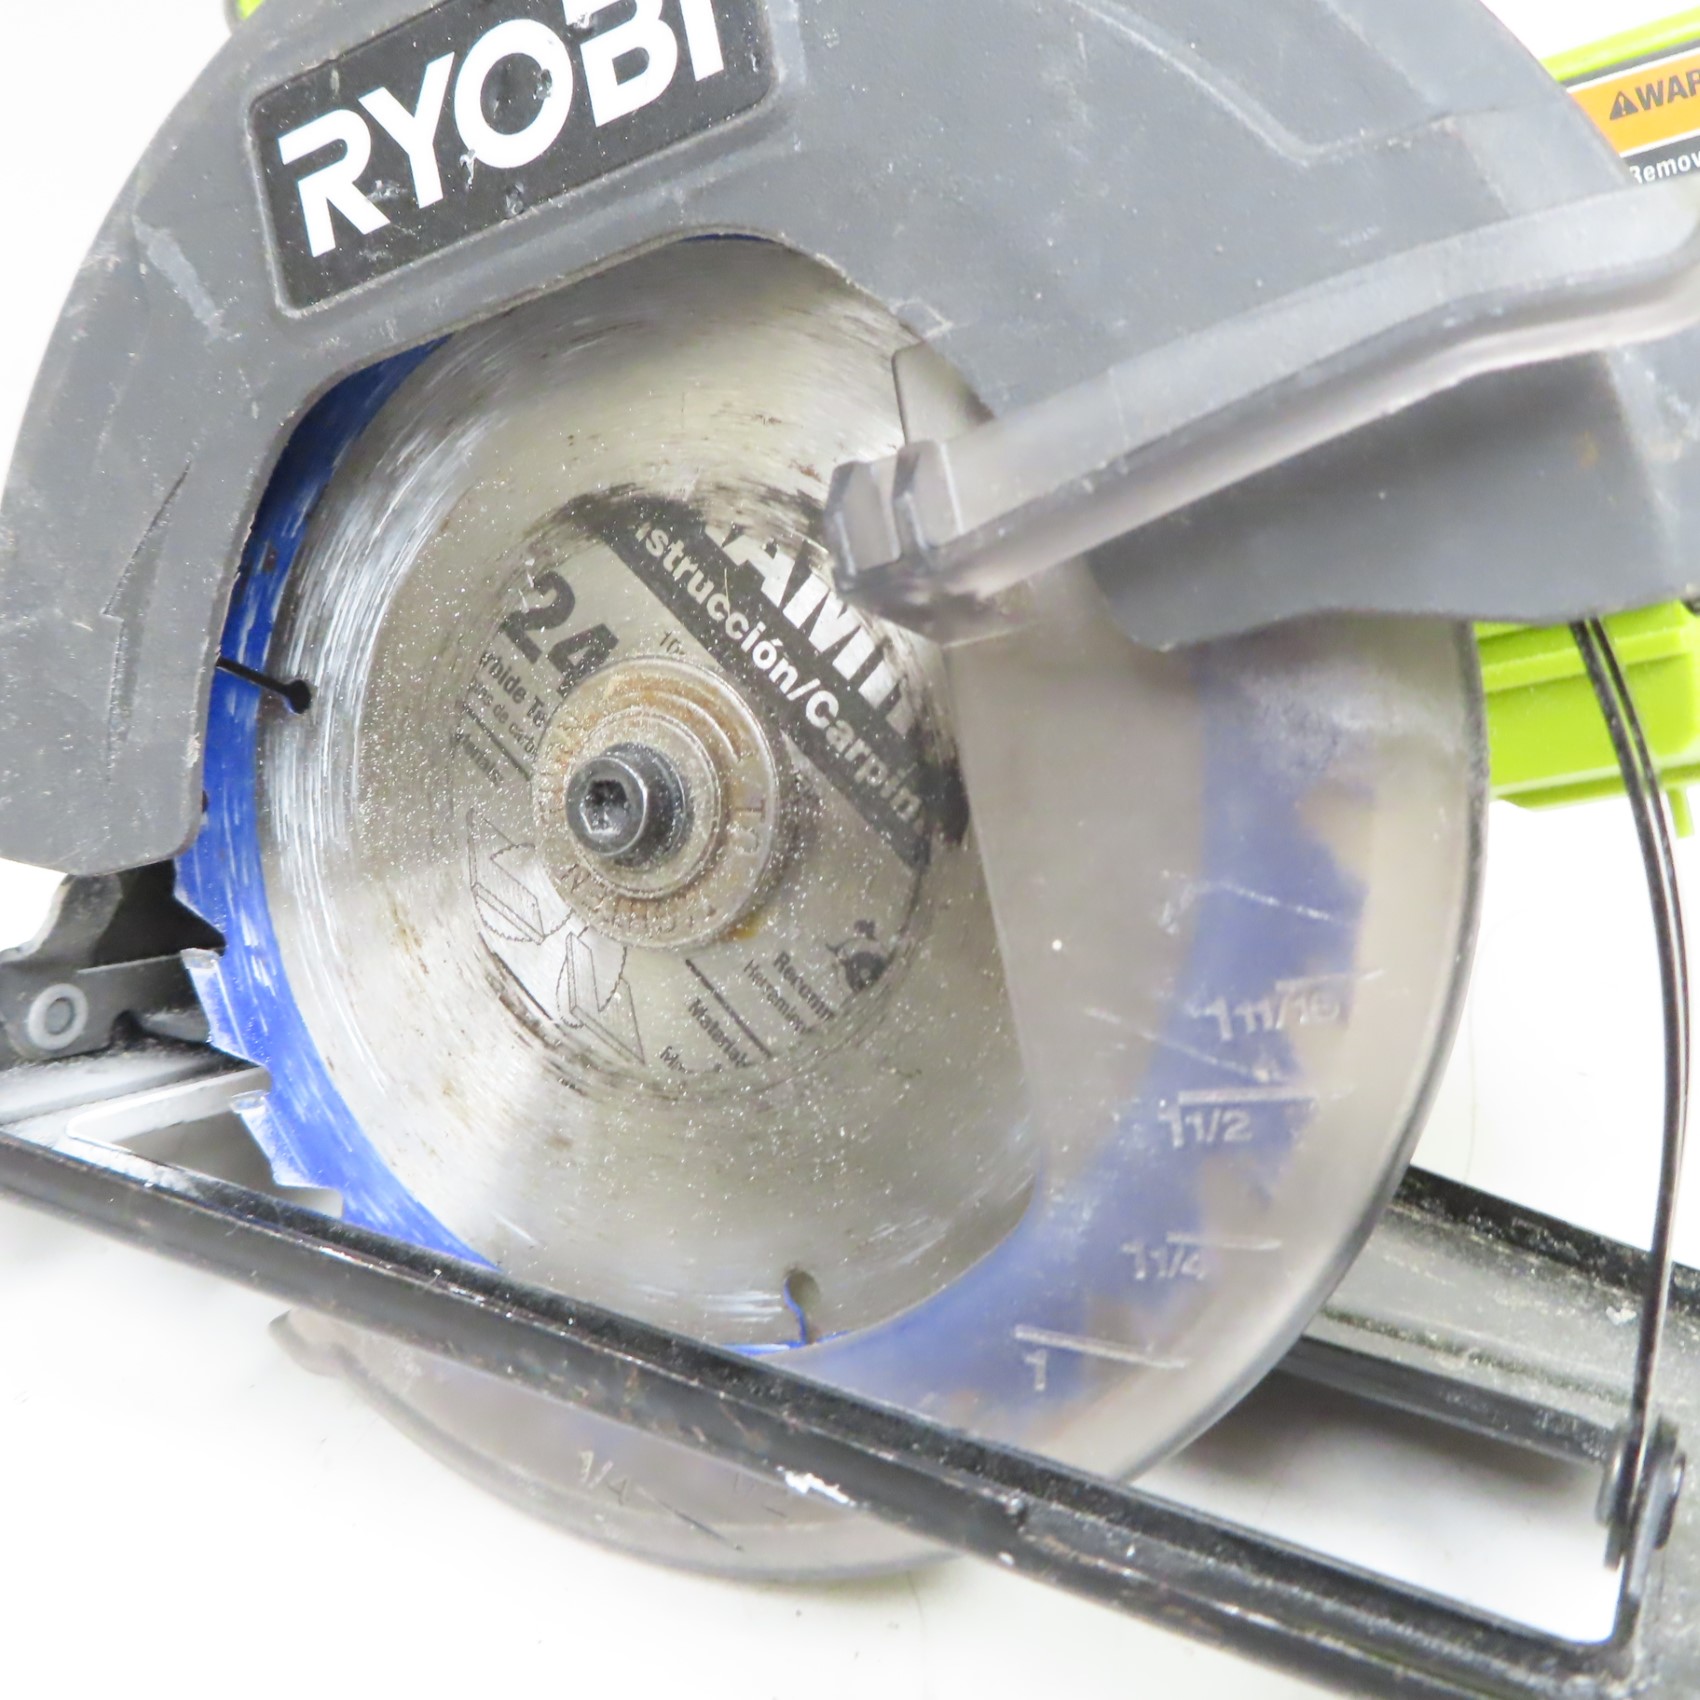 Ryobi 18V 5-1/2 Circular Saw